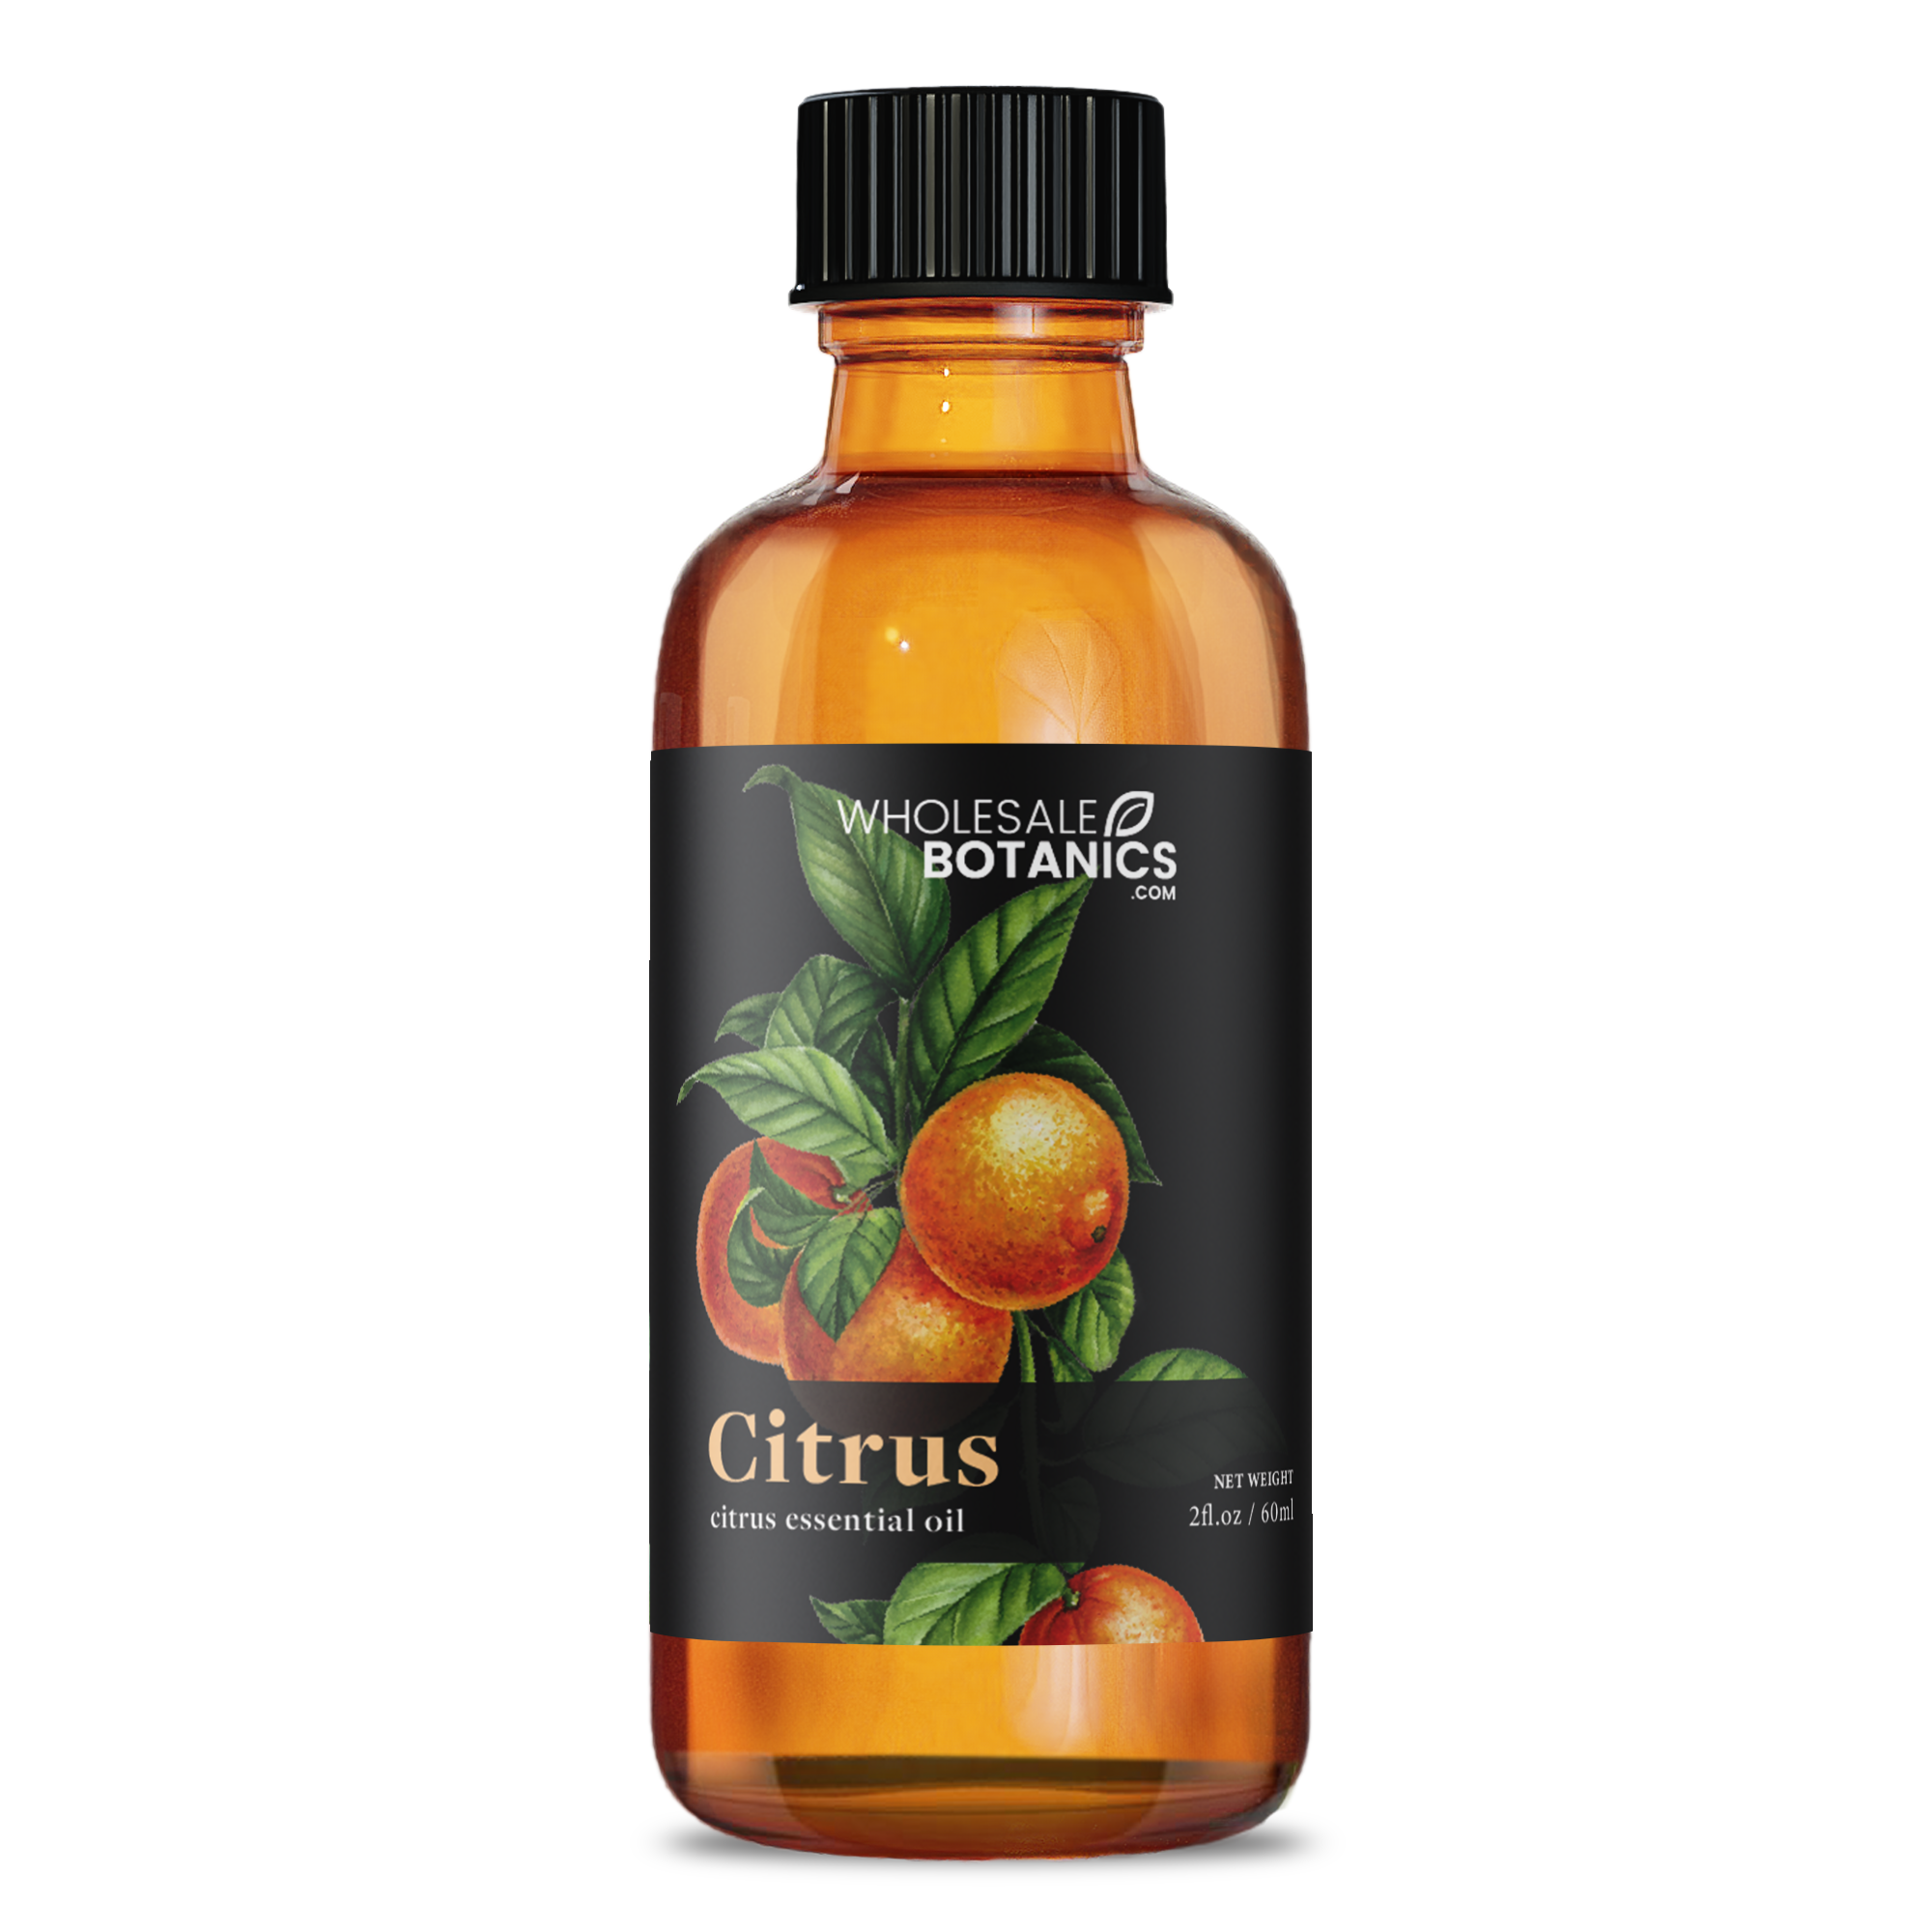 Citrus Essential Oil